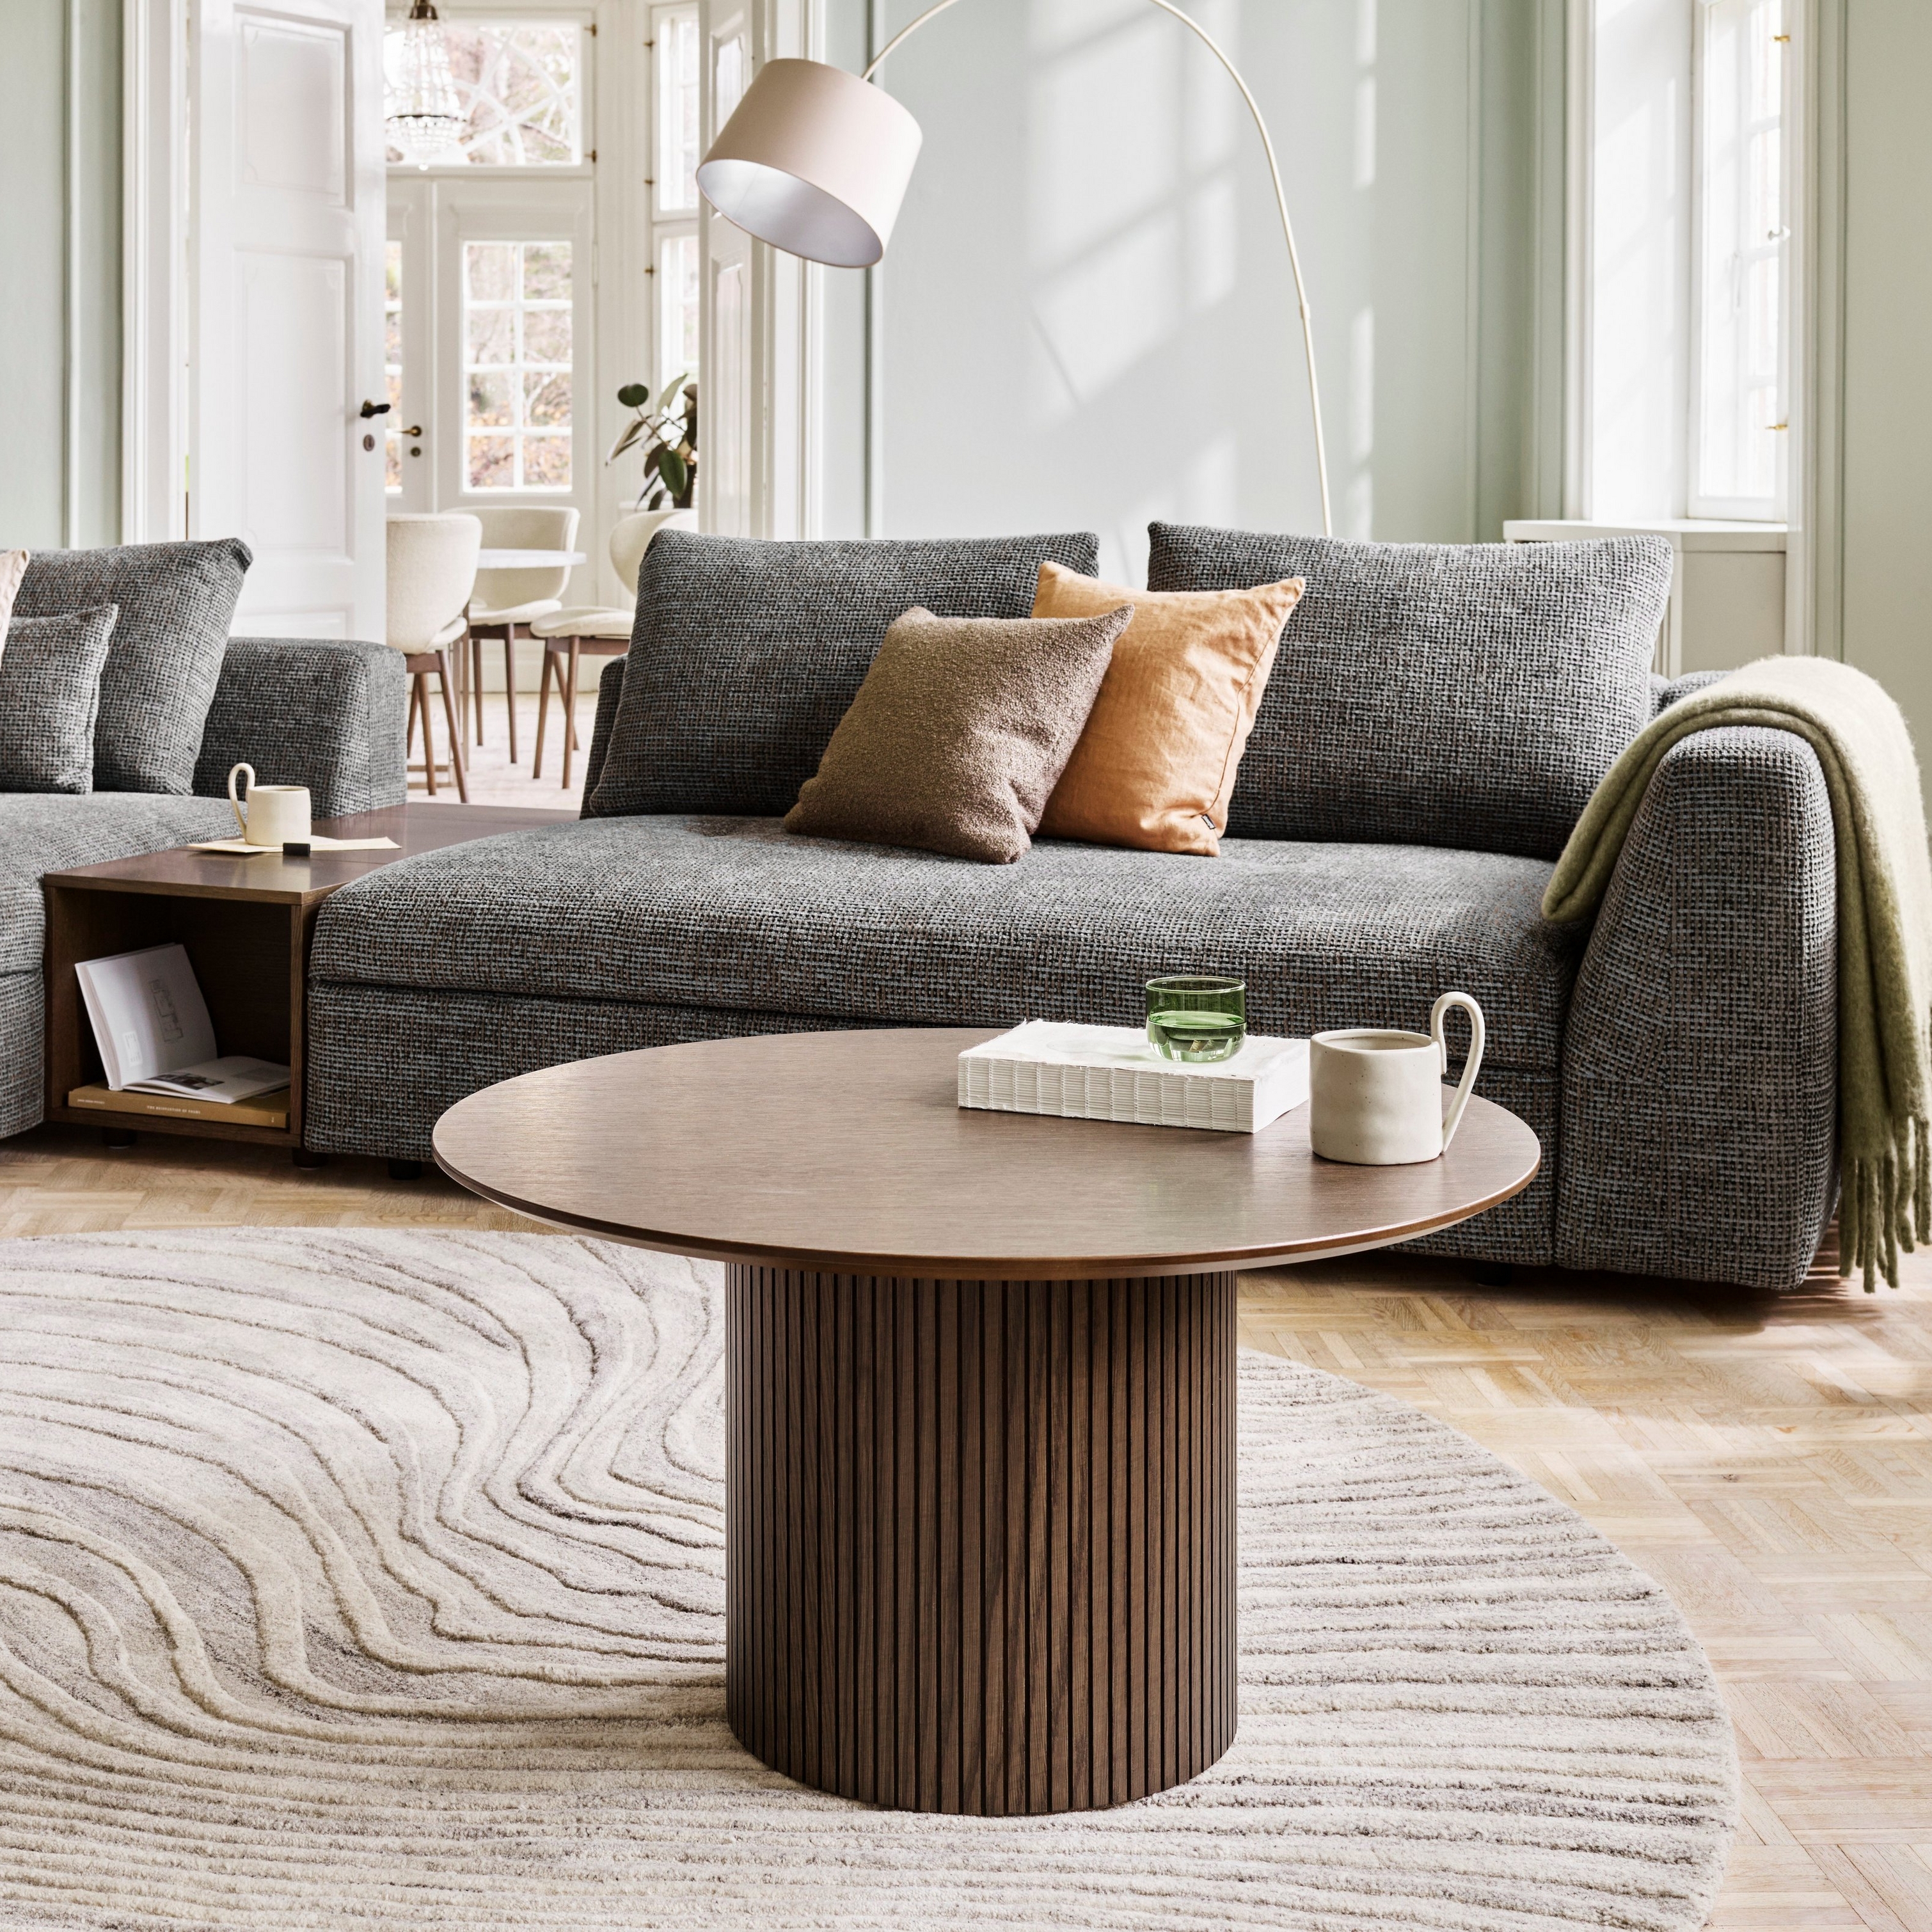 採用 Bergamo 沙發和 Santiago 咖啡桌的溫馨起居空間